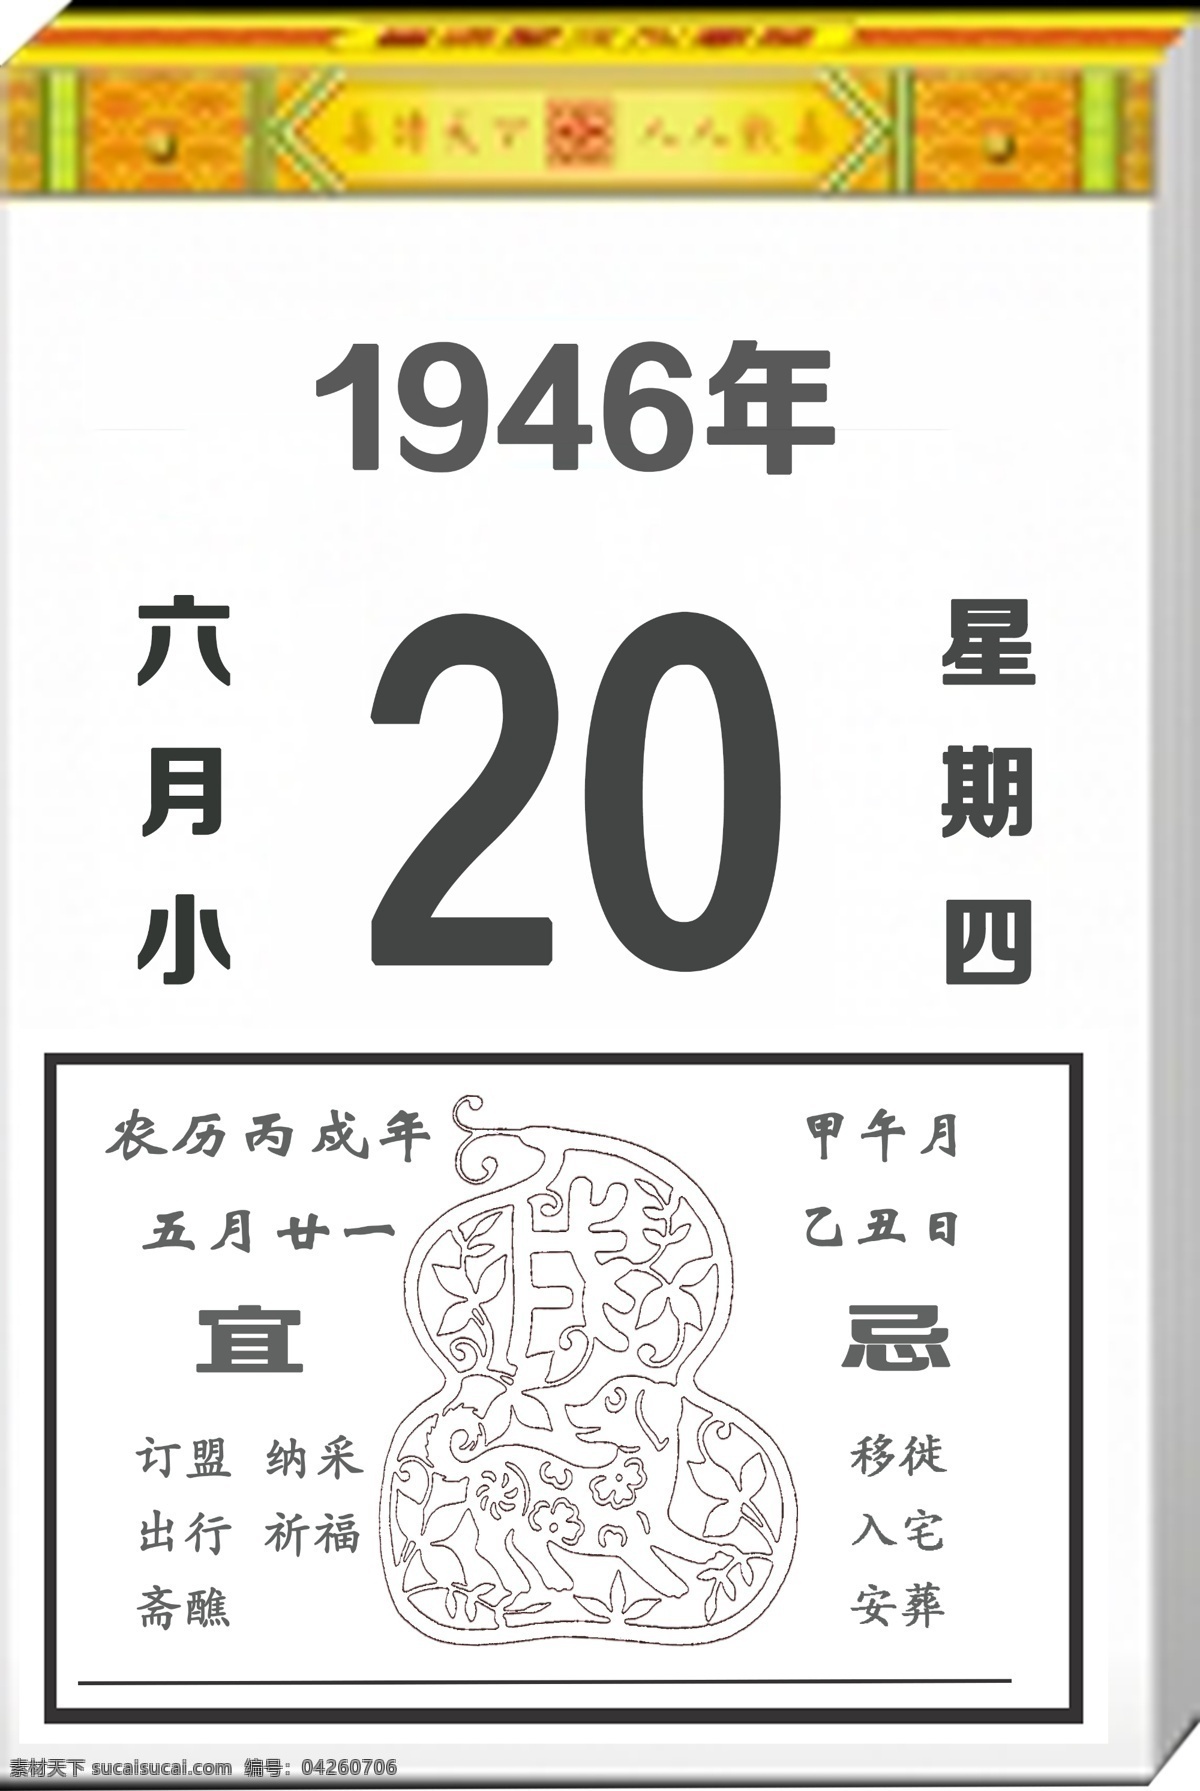 1946年 老黄历 黄历设计 文字可替换 分层素材 分层